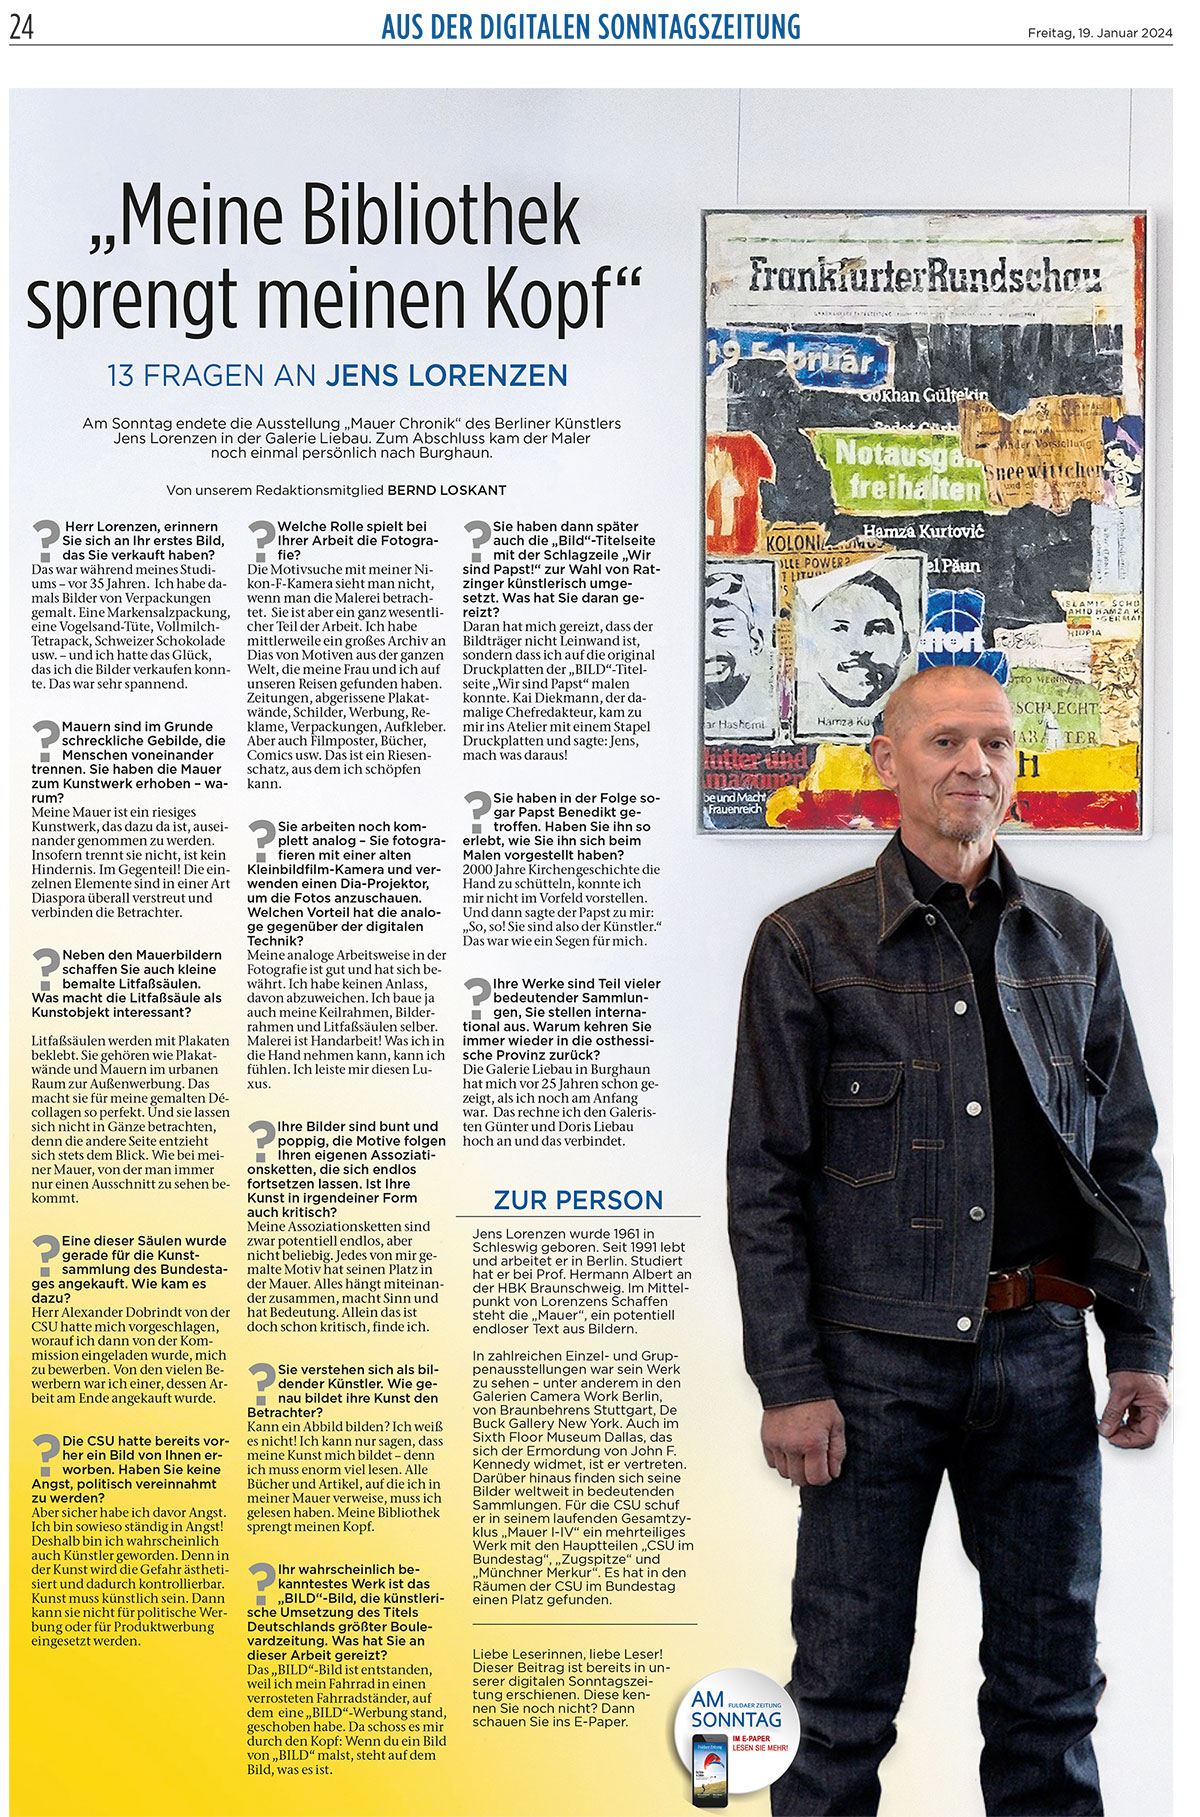 Jens Lorenzen - Portrait in der Fuldaer Zeitung